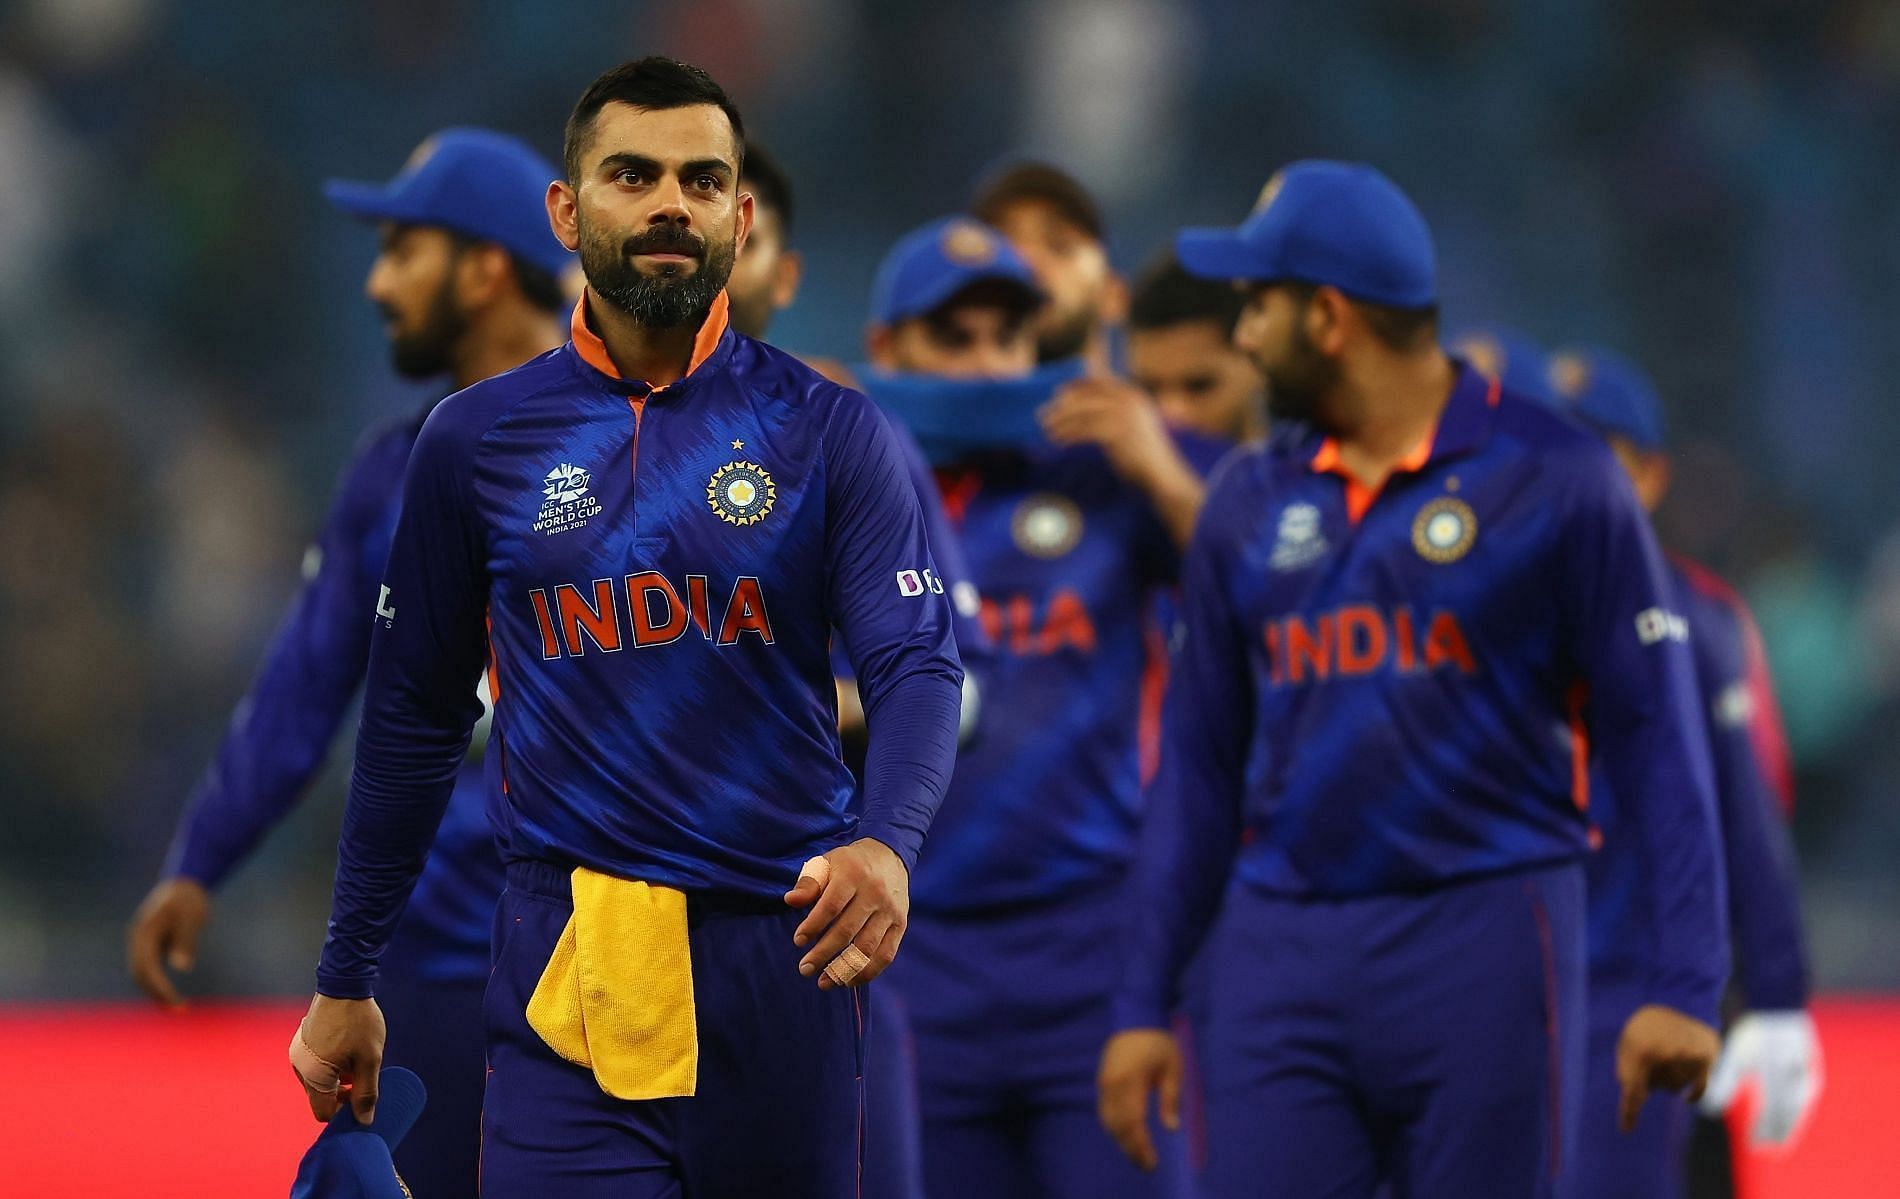 Focus on next matches, Sunil Gavaskar advice to Team India